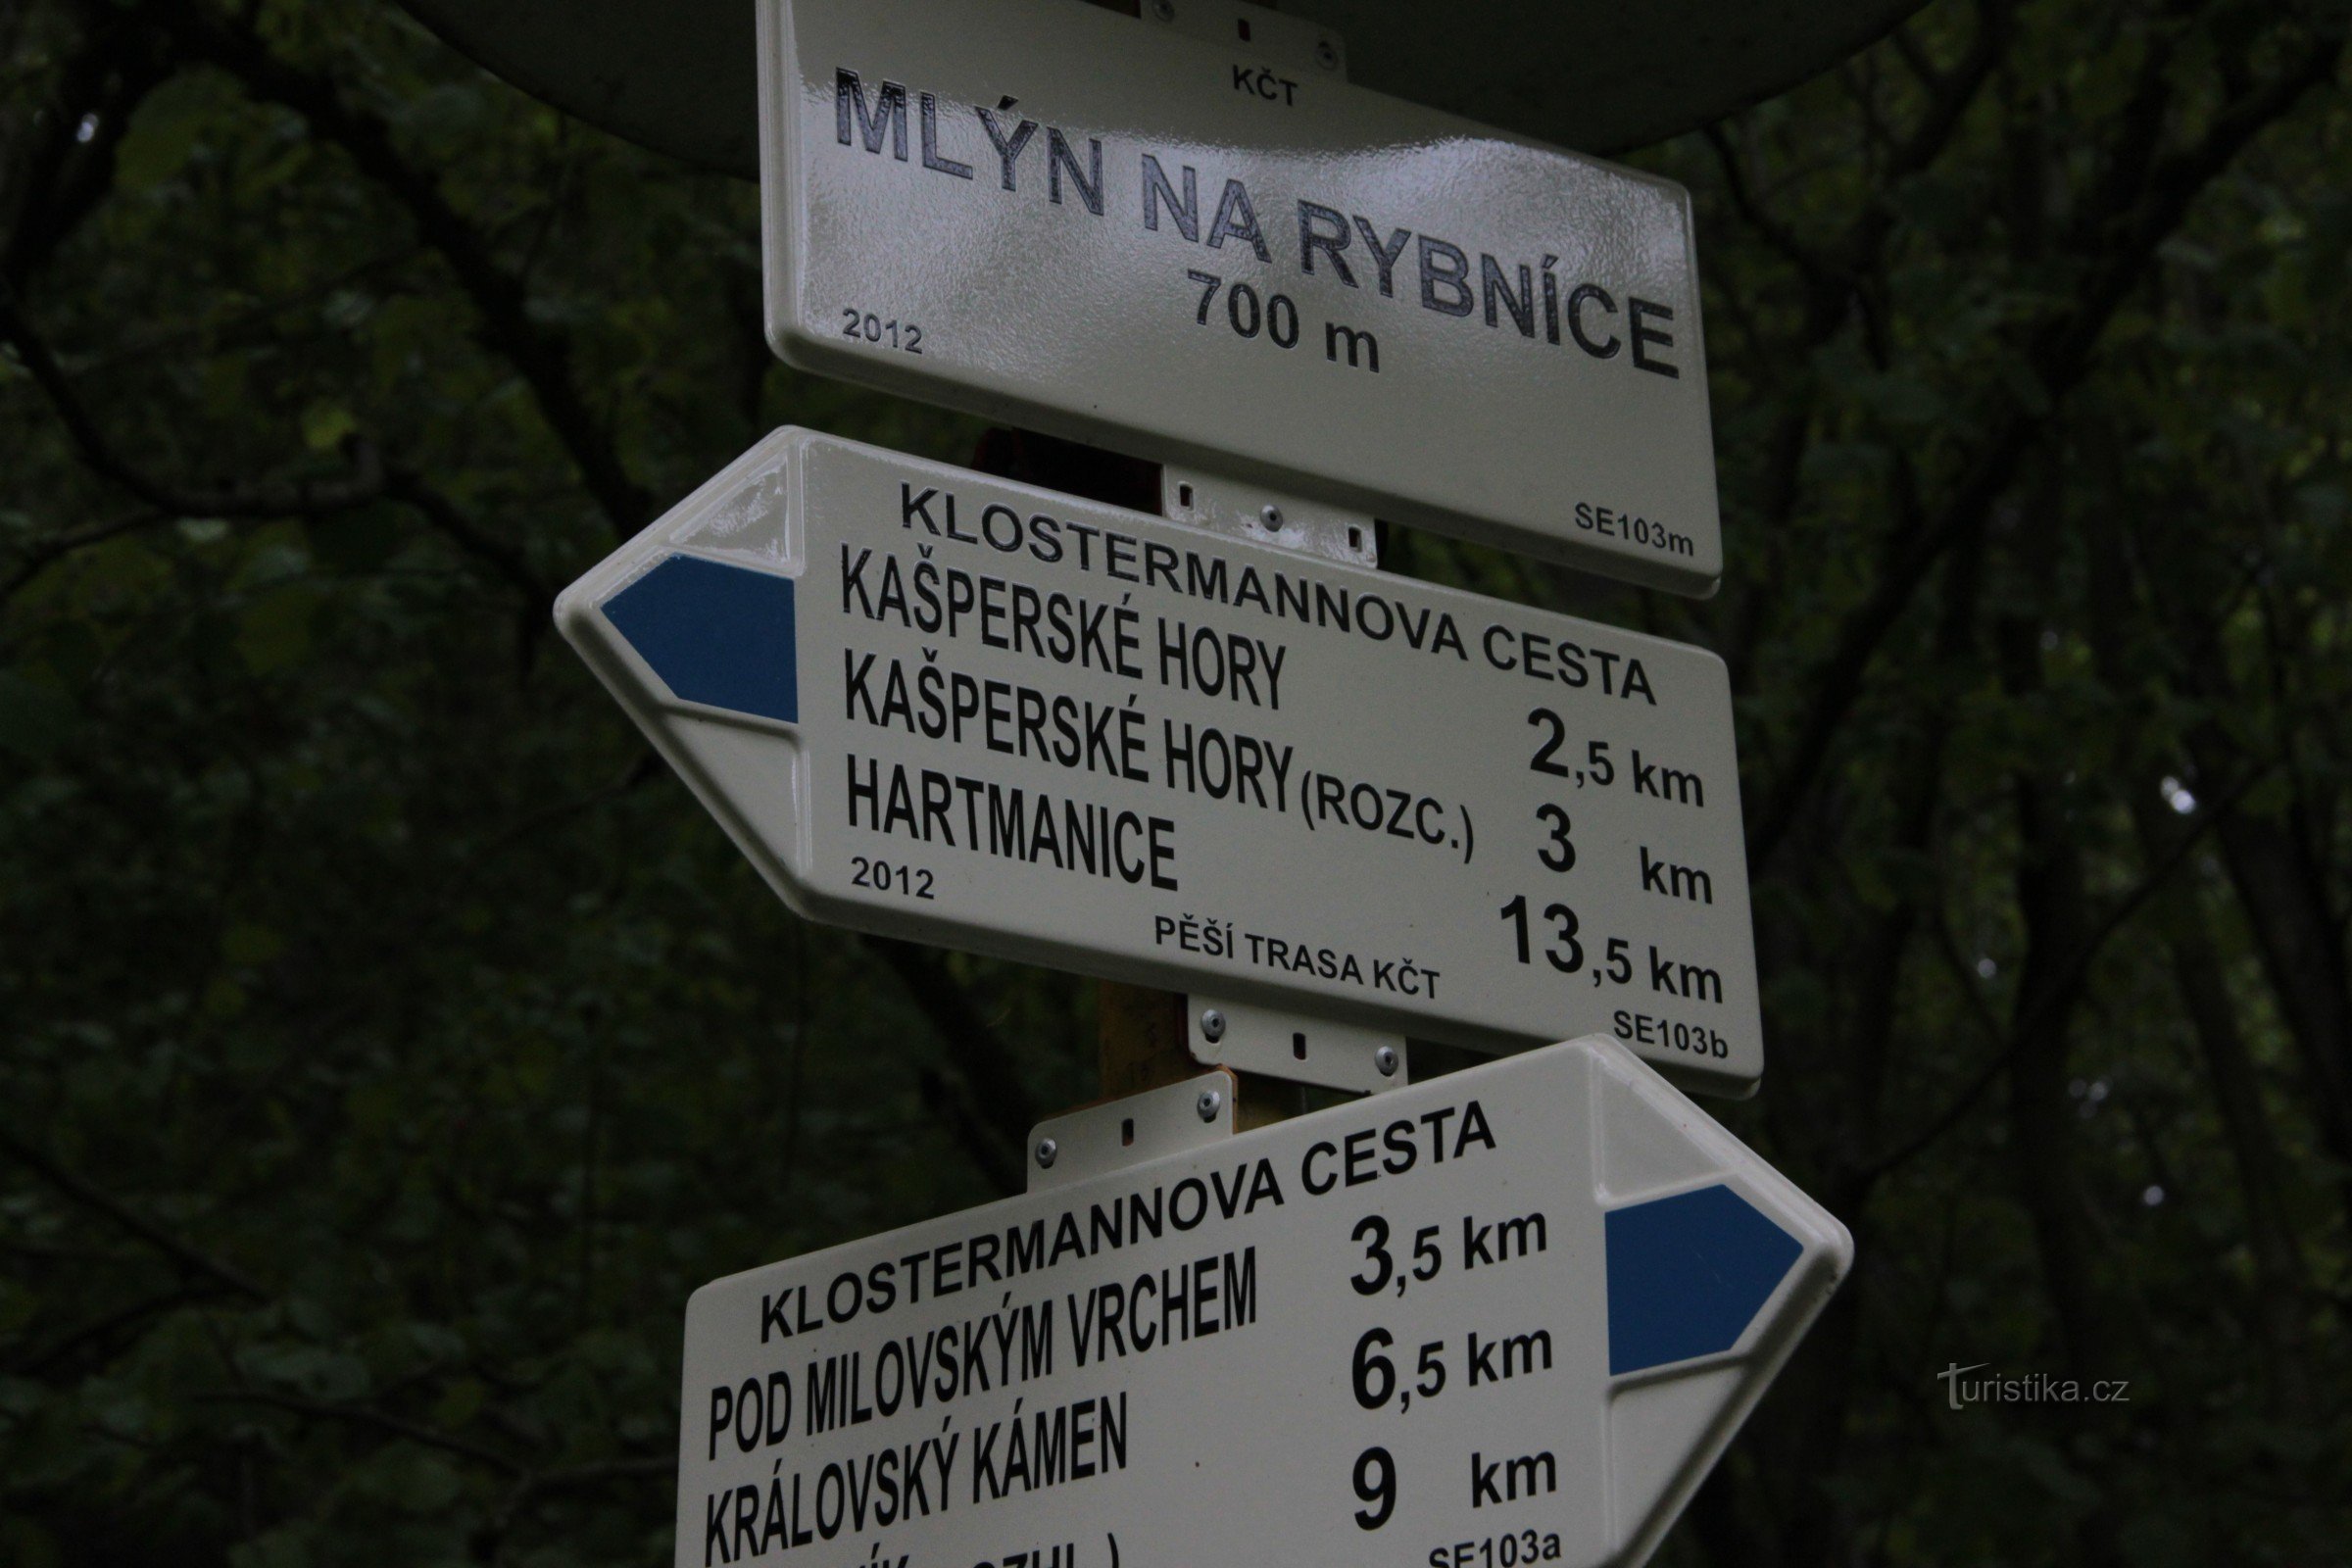 Placa de sinalização Mlyn na Rybníce